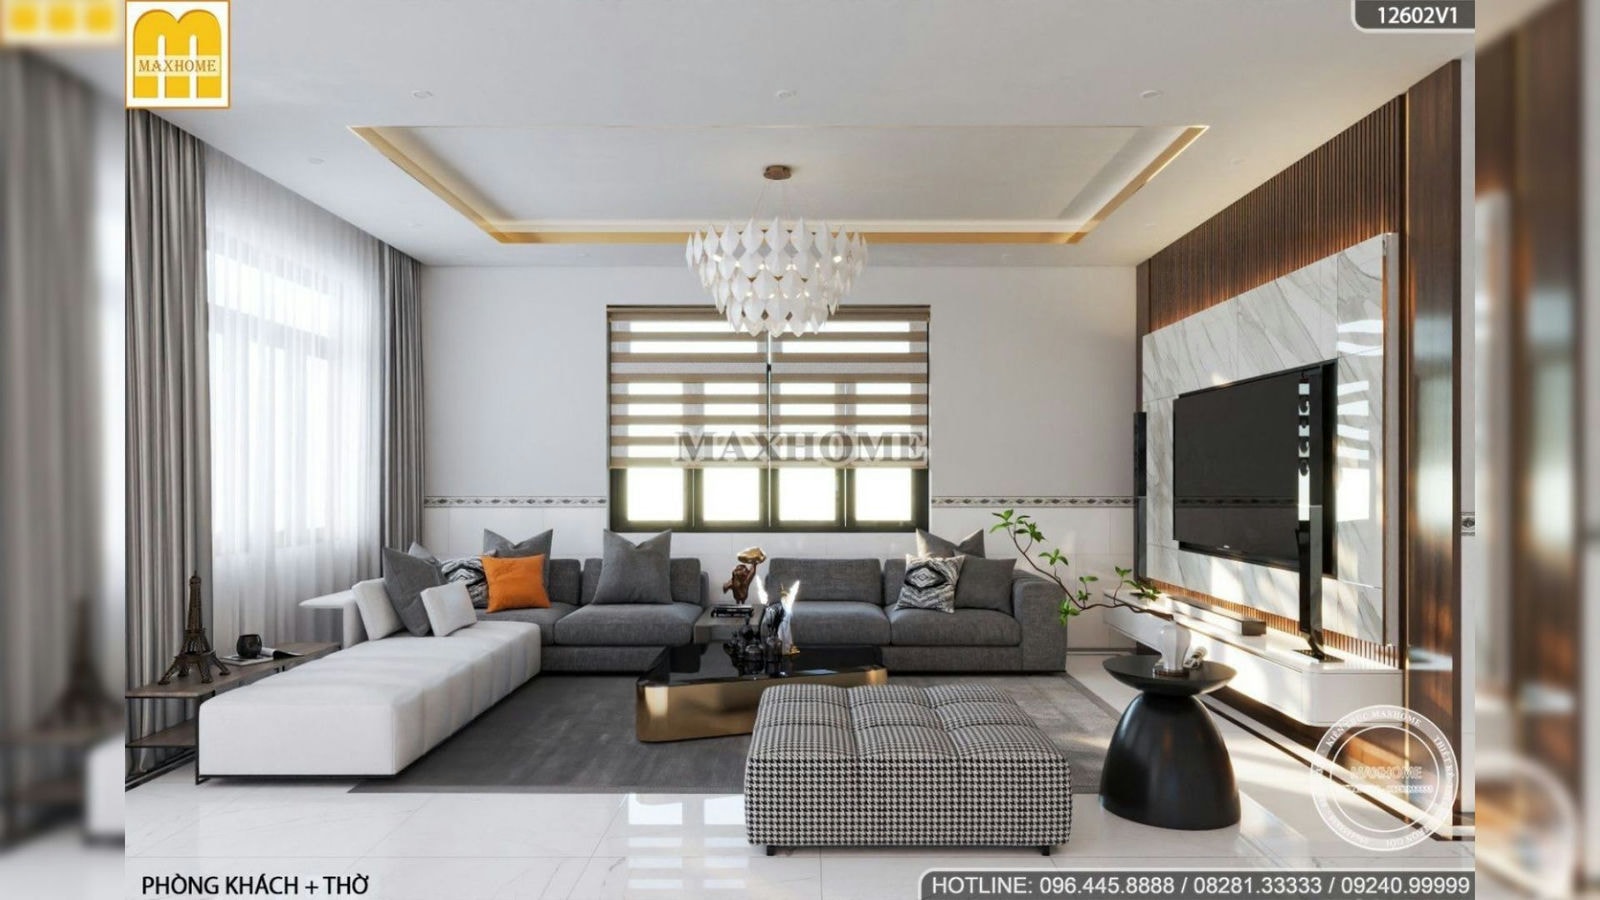 Thiết kế nội thất hiện đại sang xịn cho mẫu nhà vườn mái Thái ở Bạc Liêu